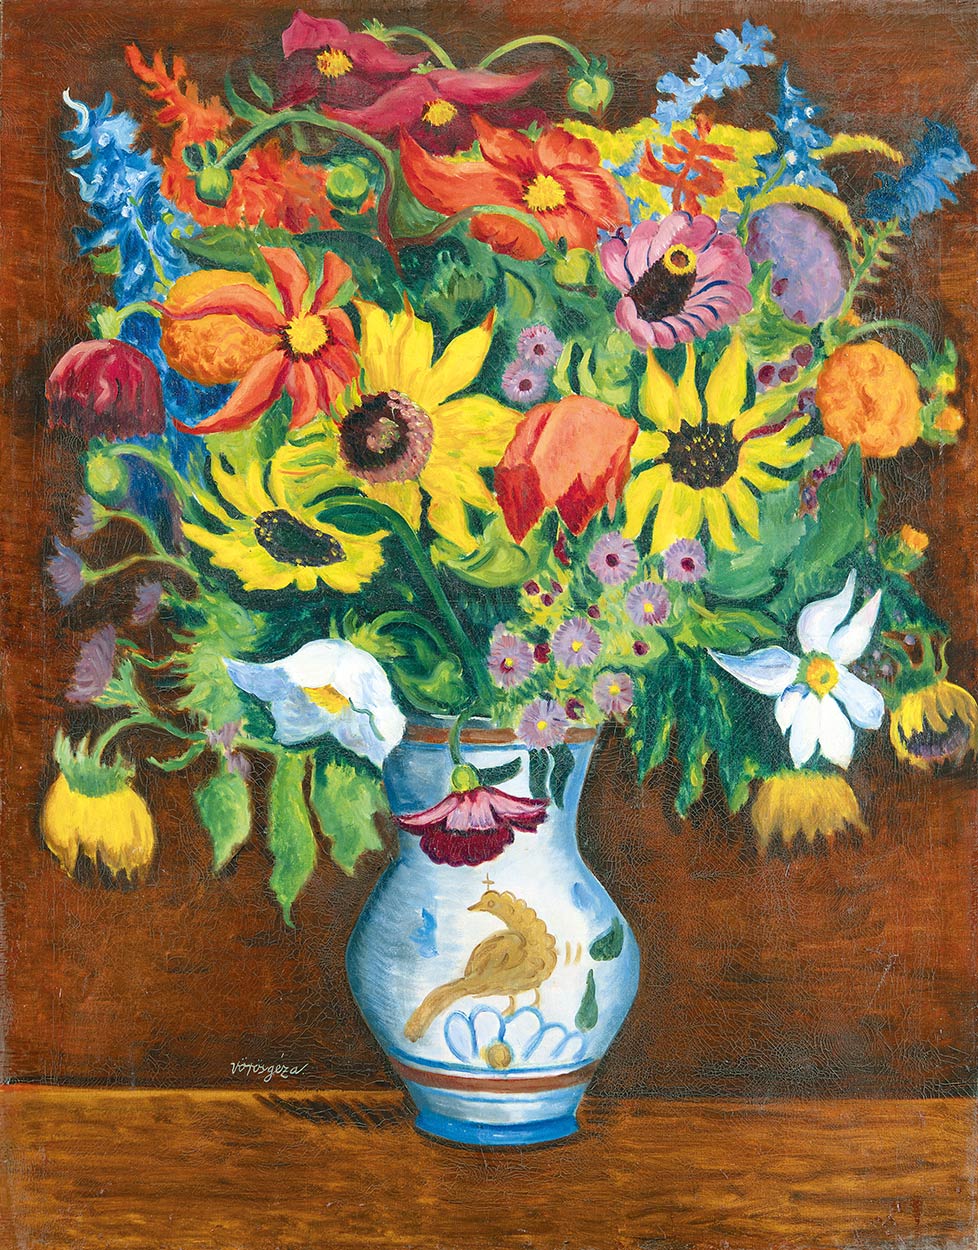 Vörös Géza (1897-1957) Still-life with Sunflowers